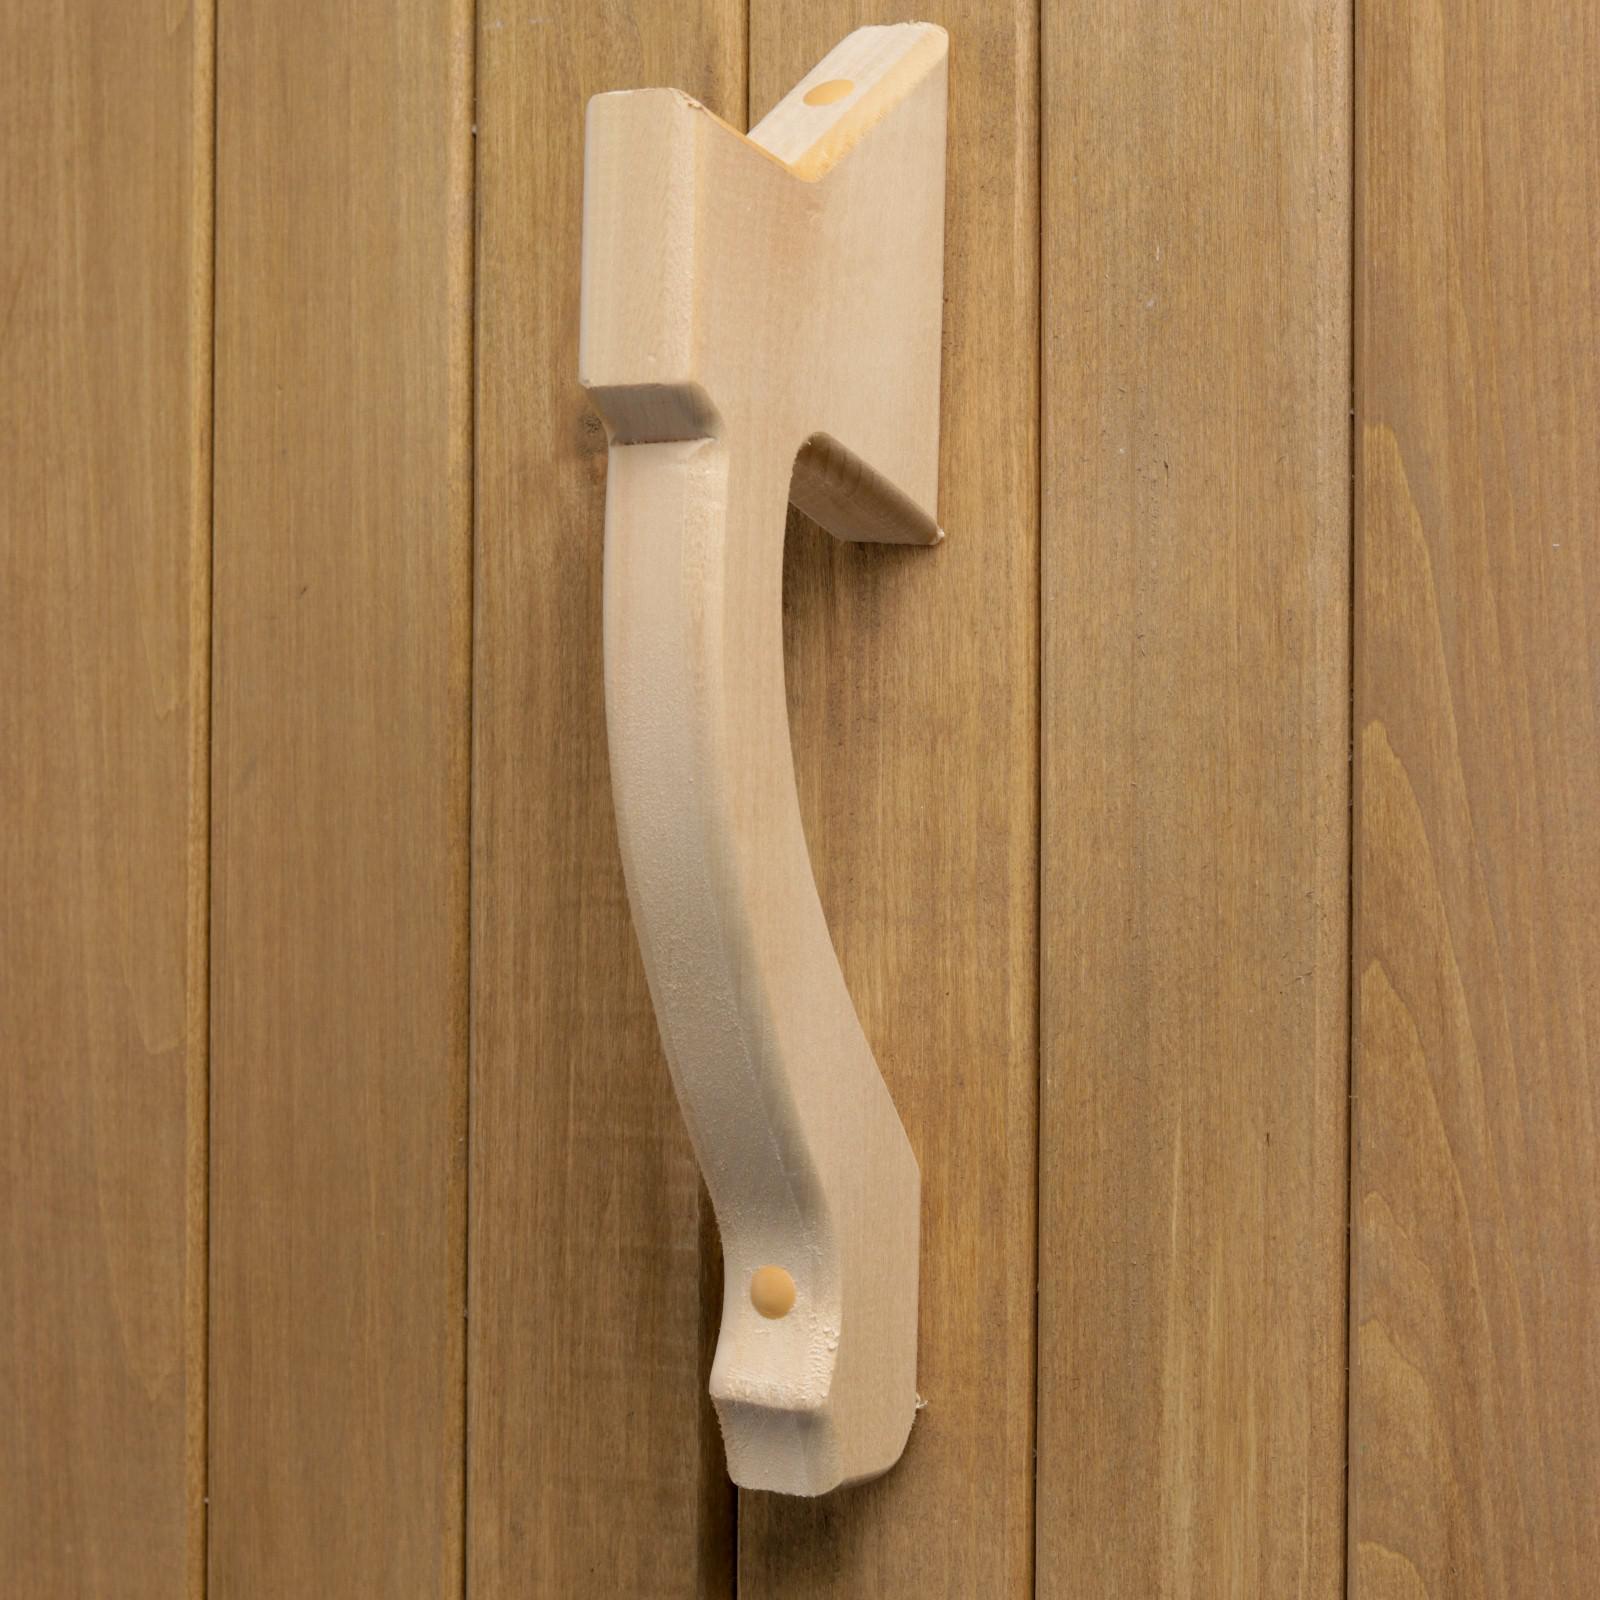 Установка деревянной двери своими руками — пошаговая инструкция | Линия Стиля